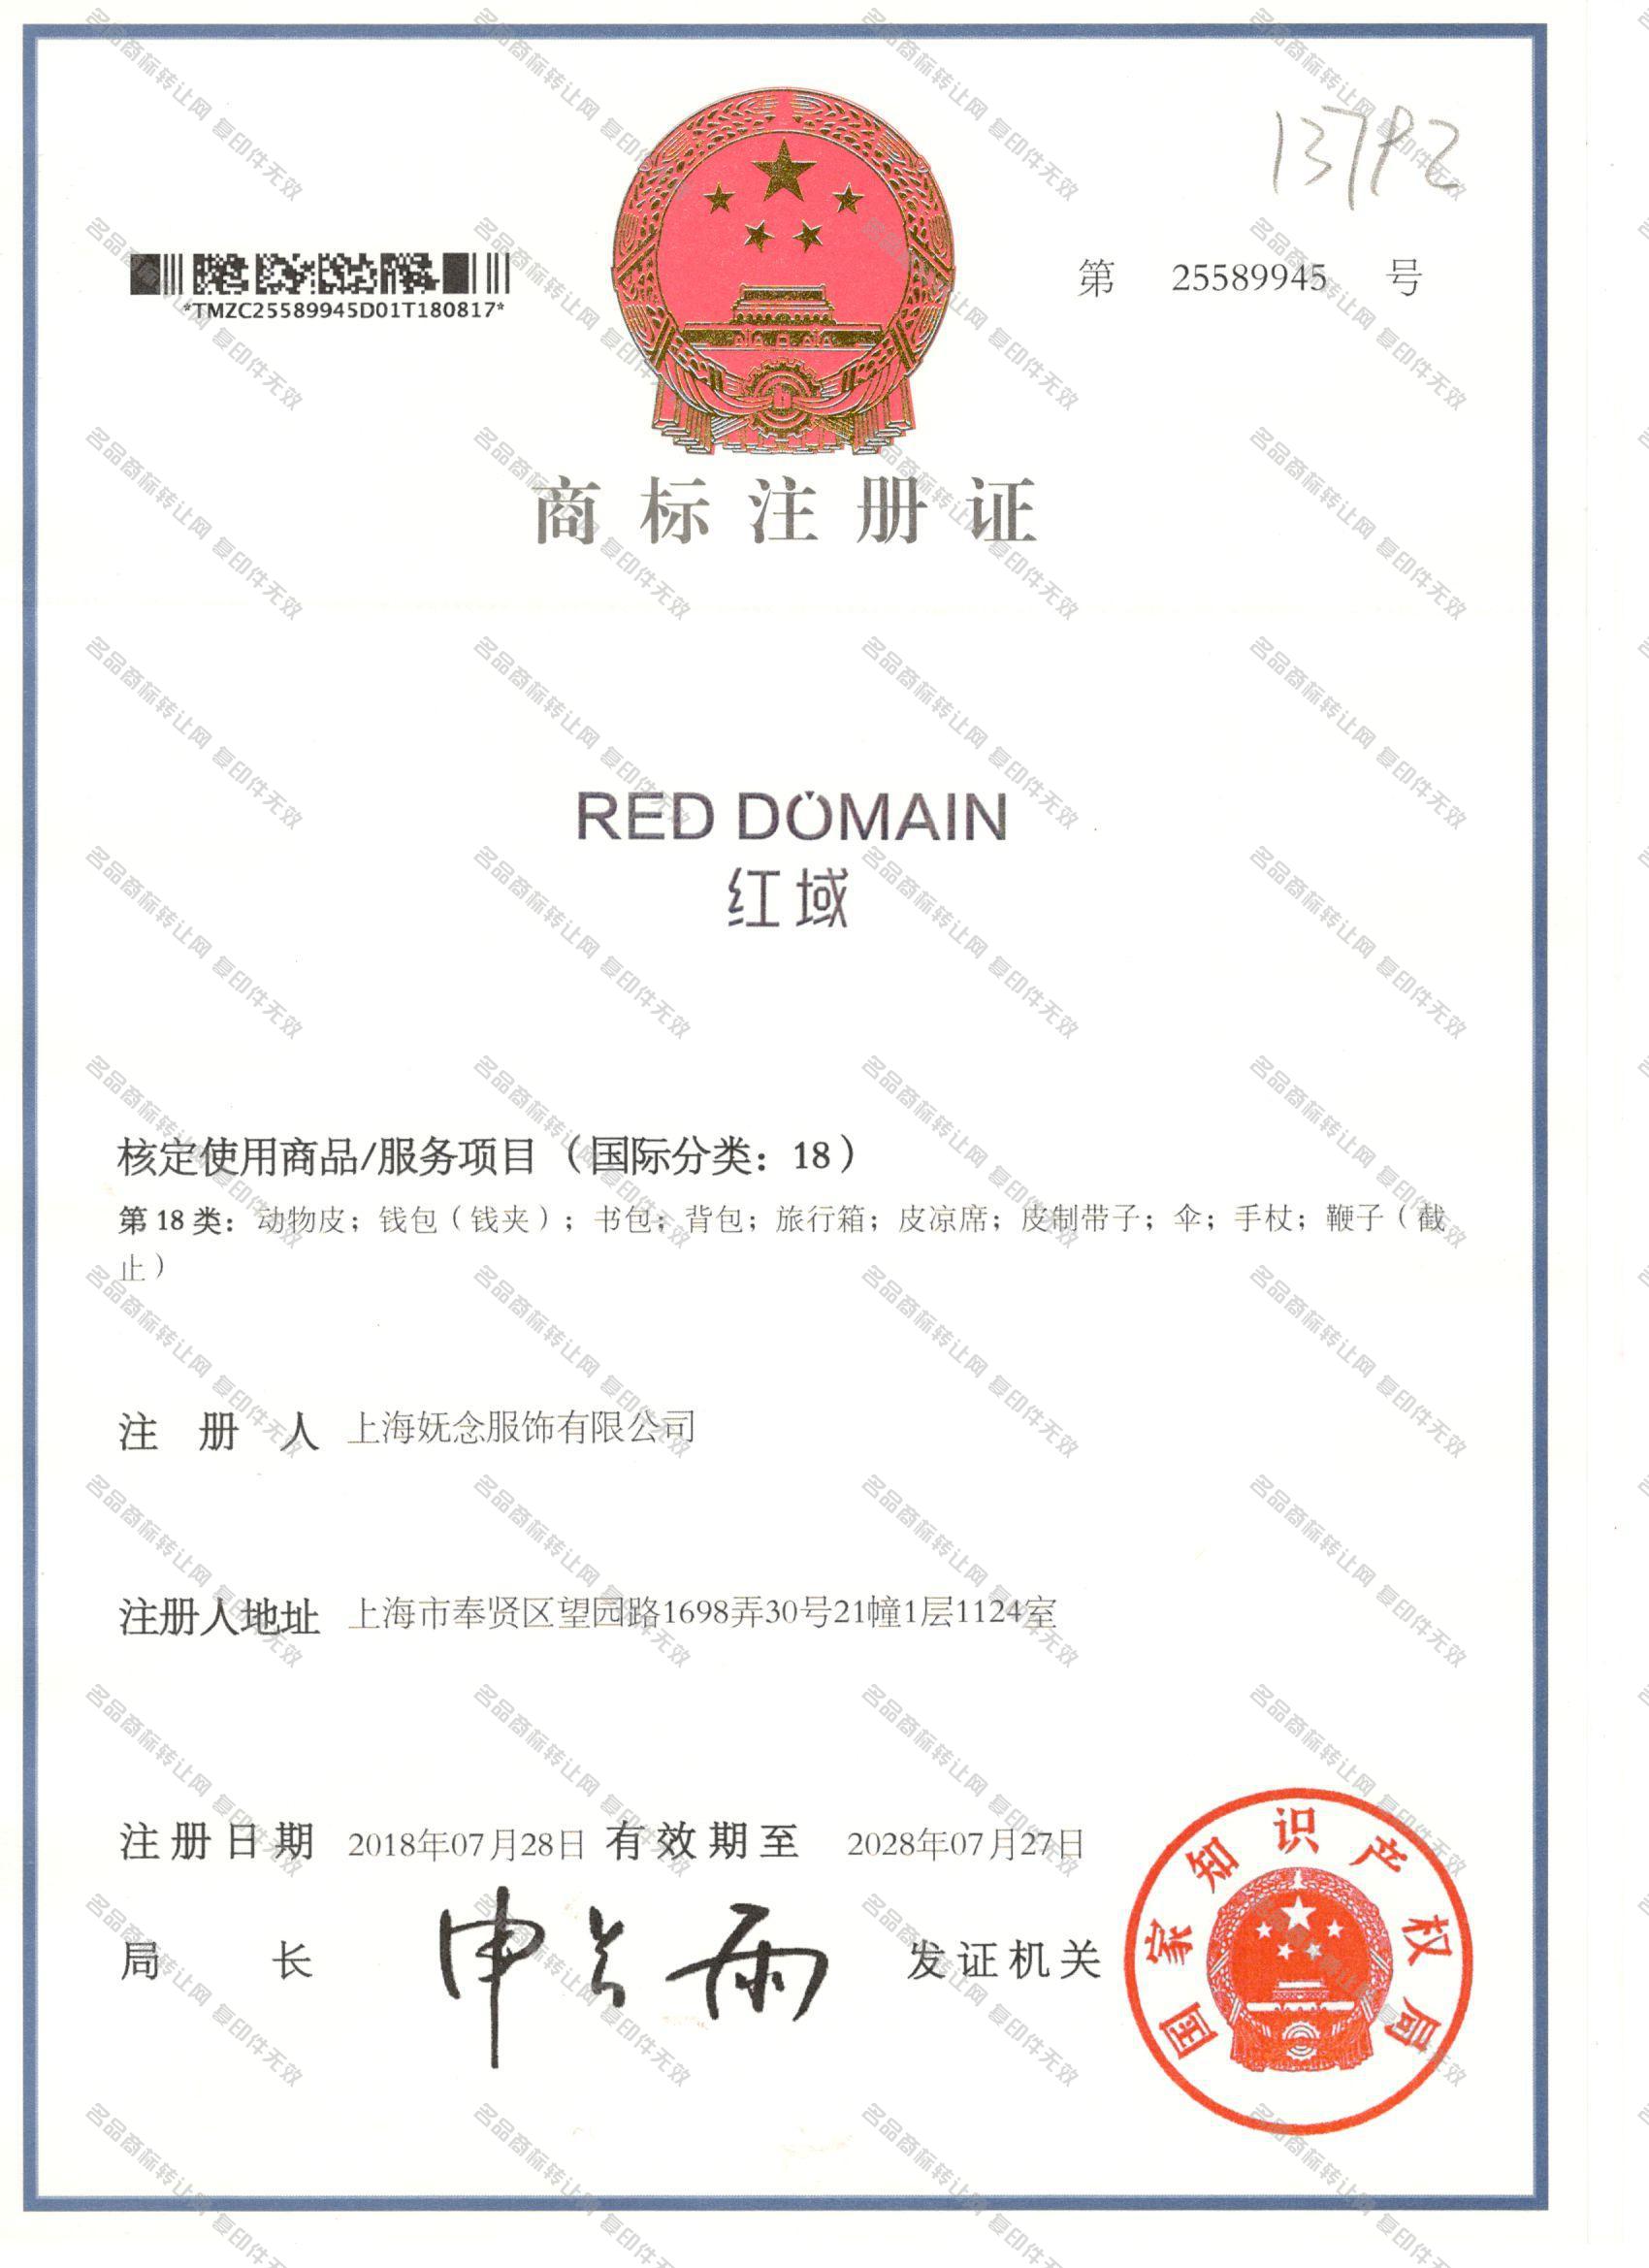 红域 RED DOMAIN注册证